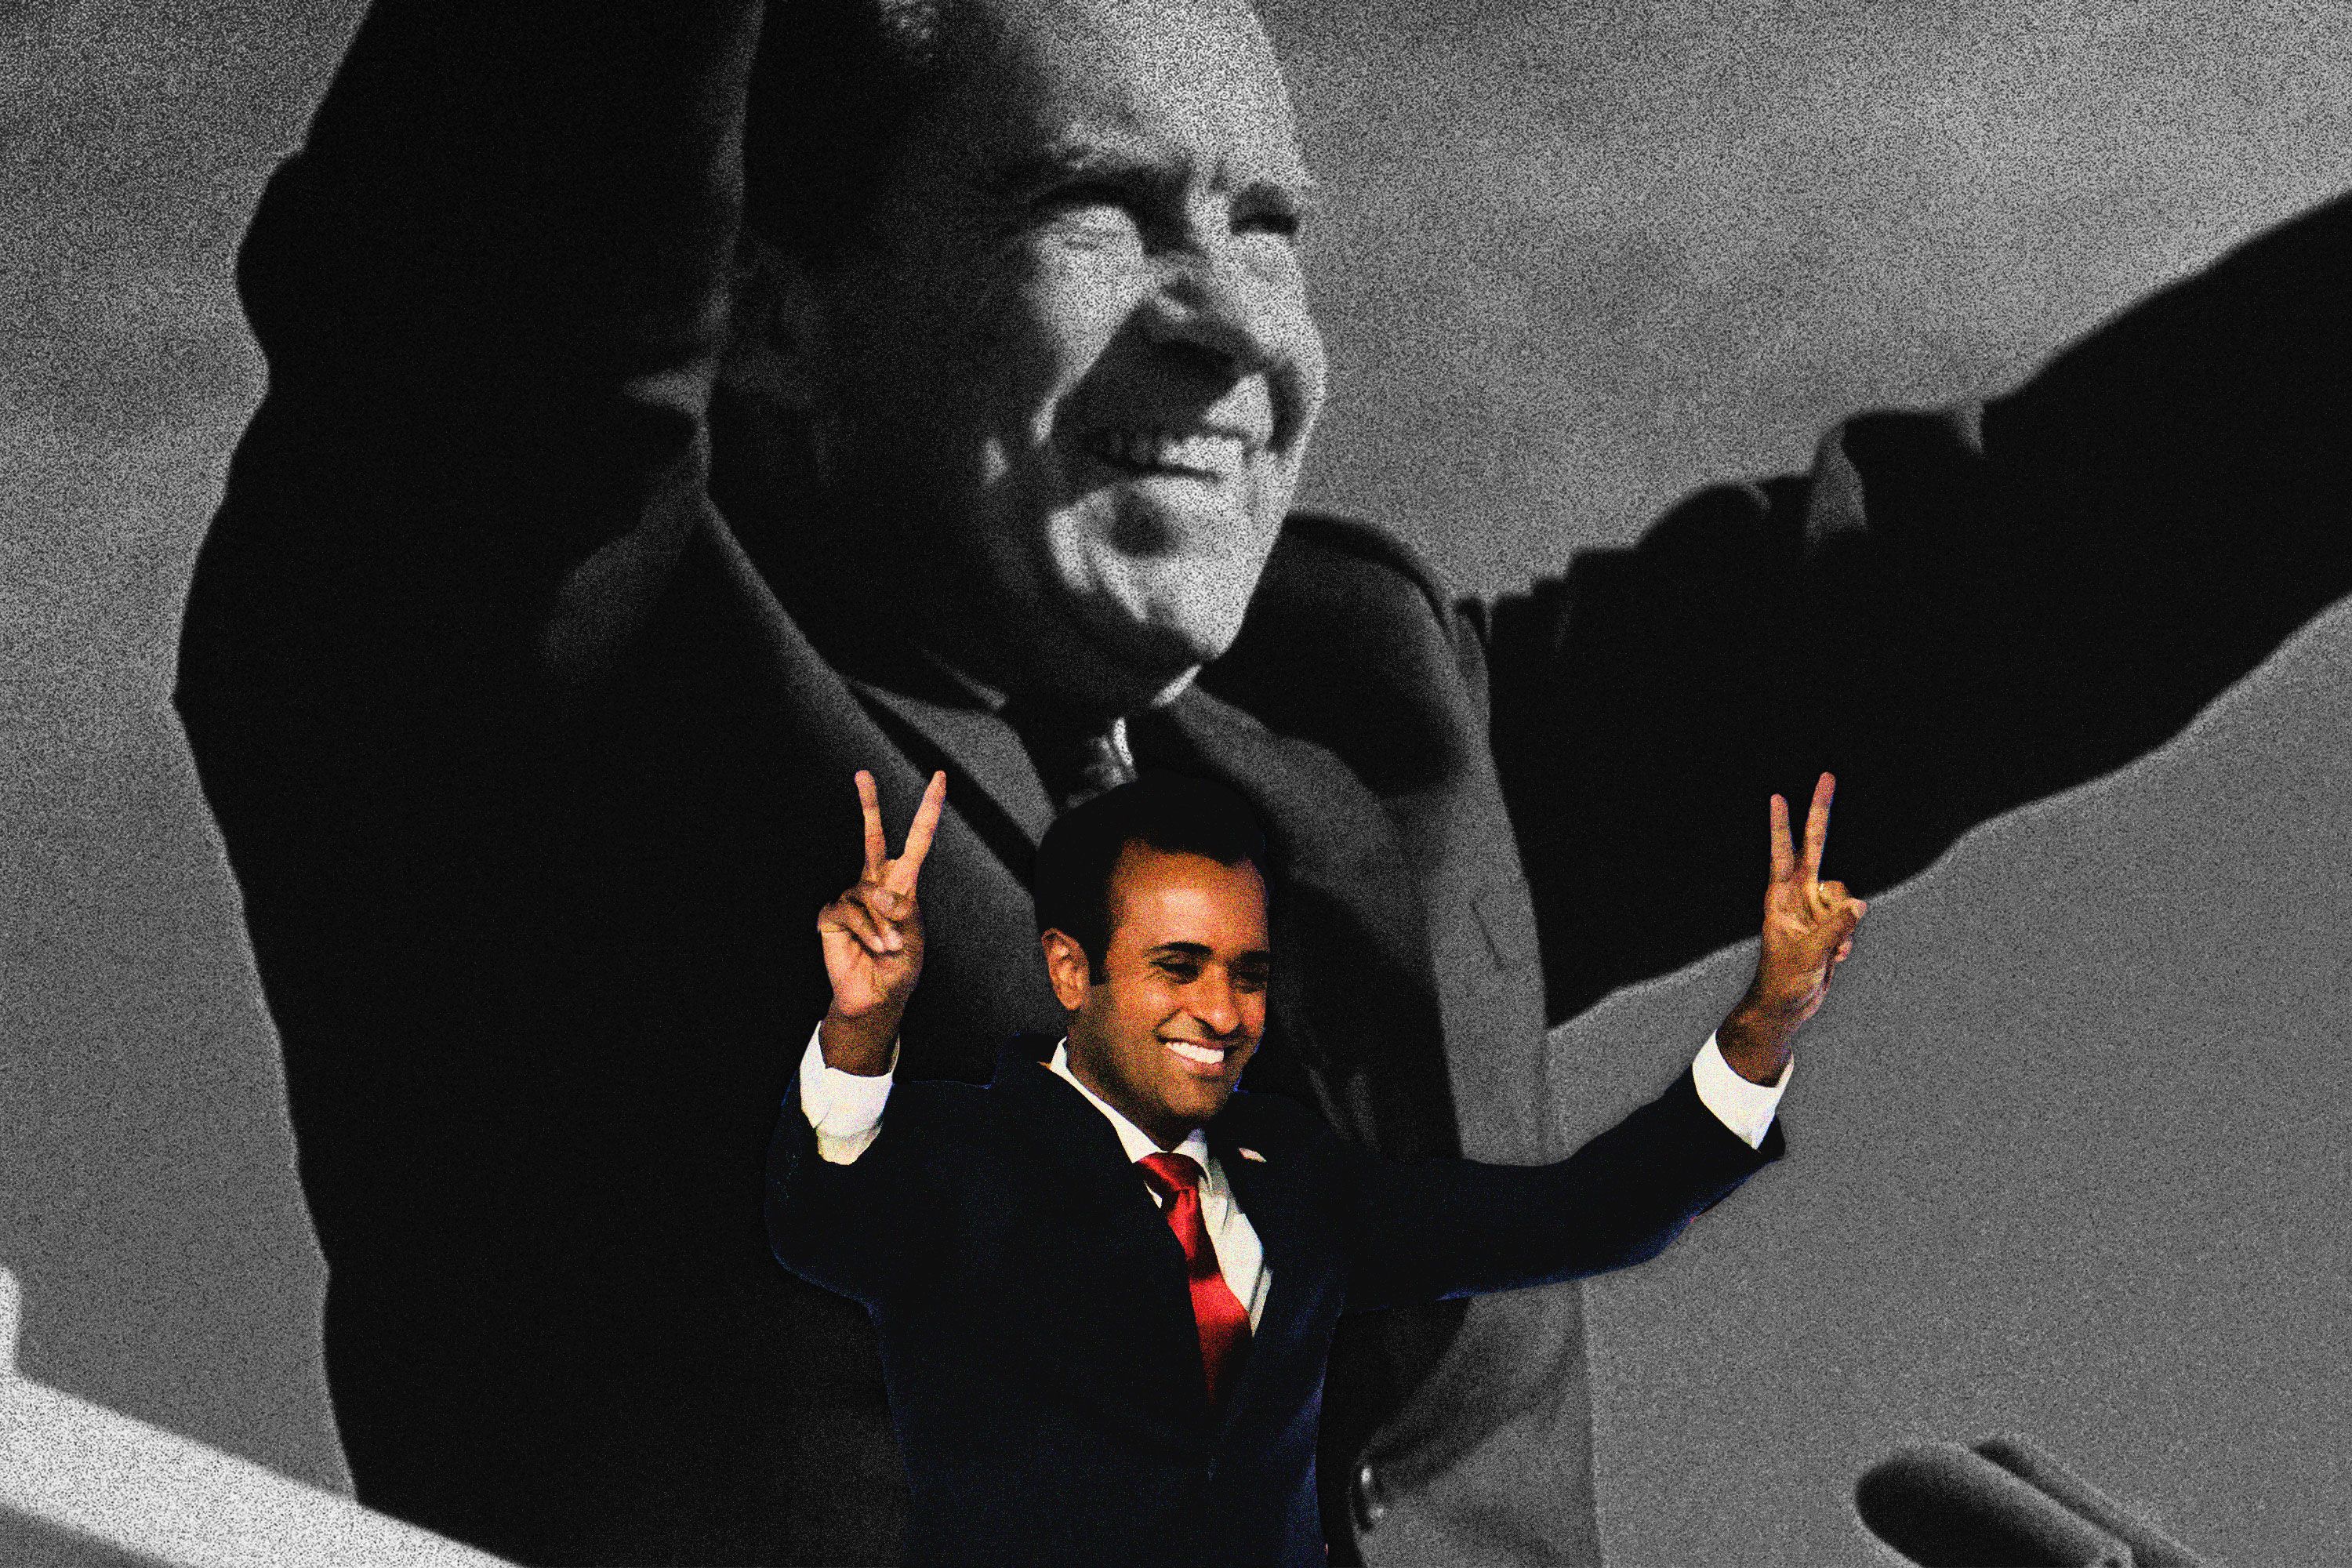 Ramaswamy Says He Loves Richard Nixon. Is He Serious?